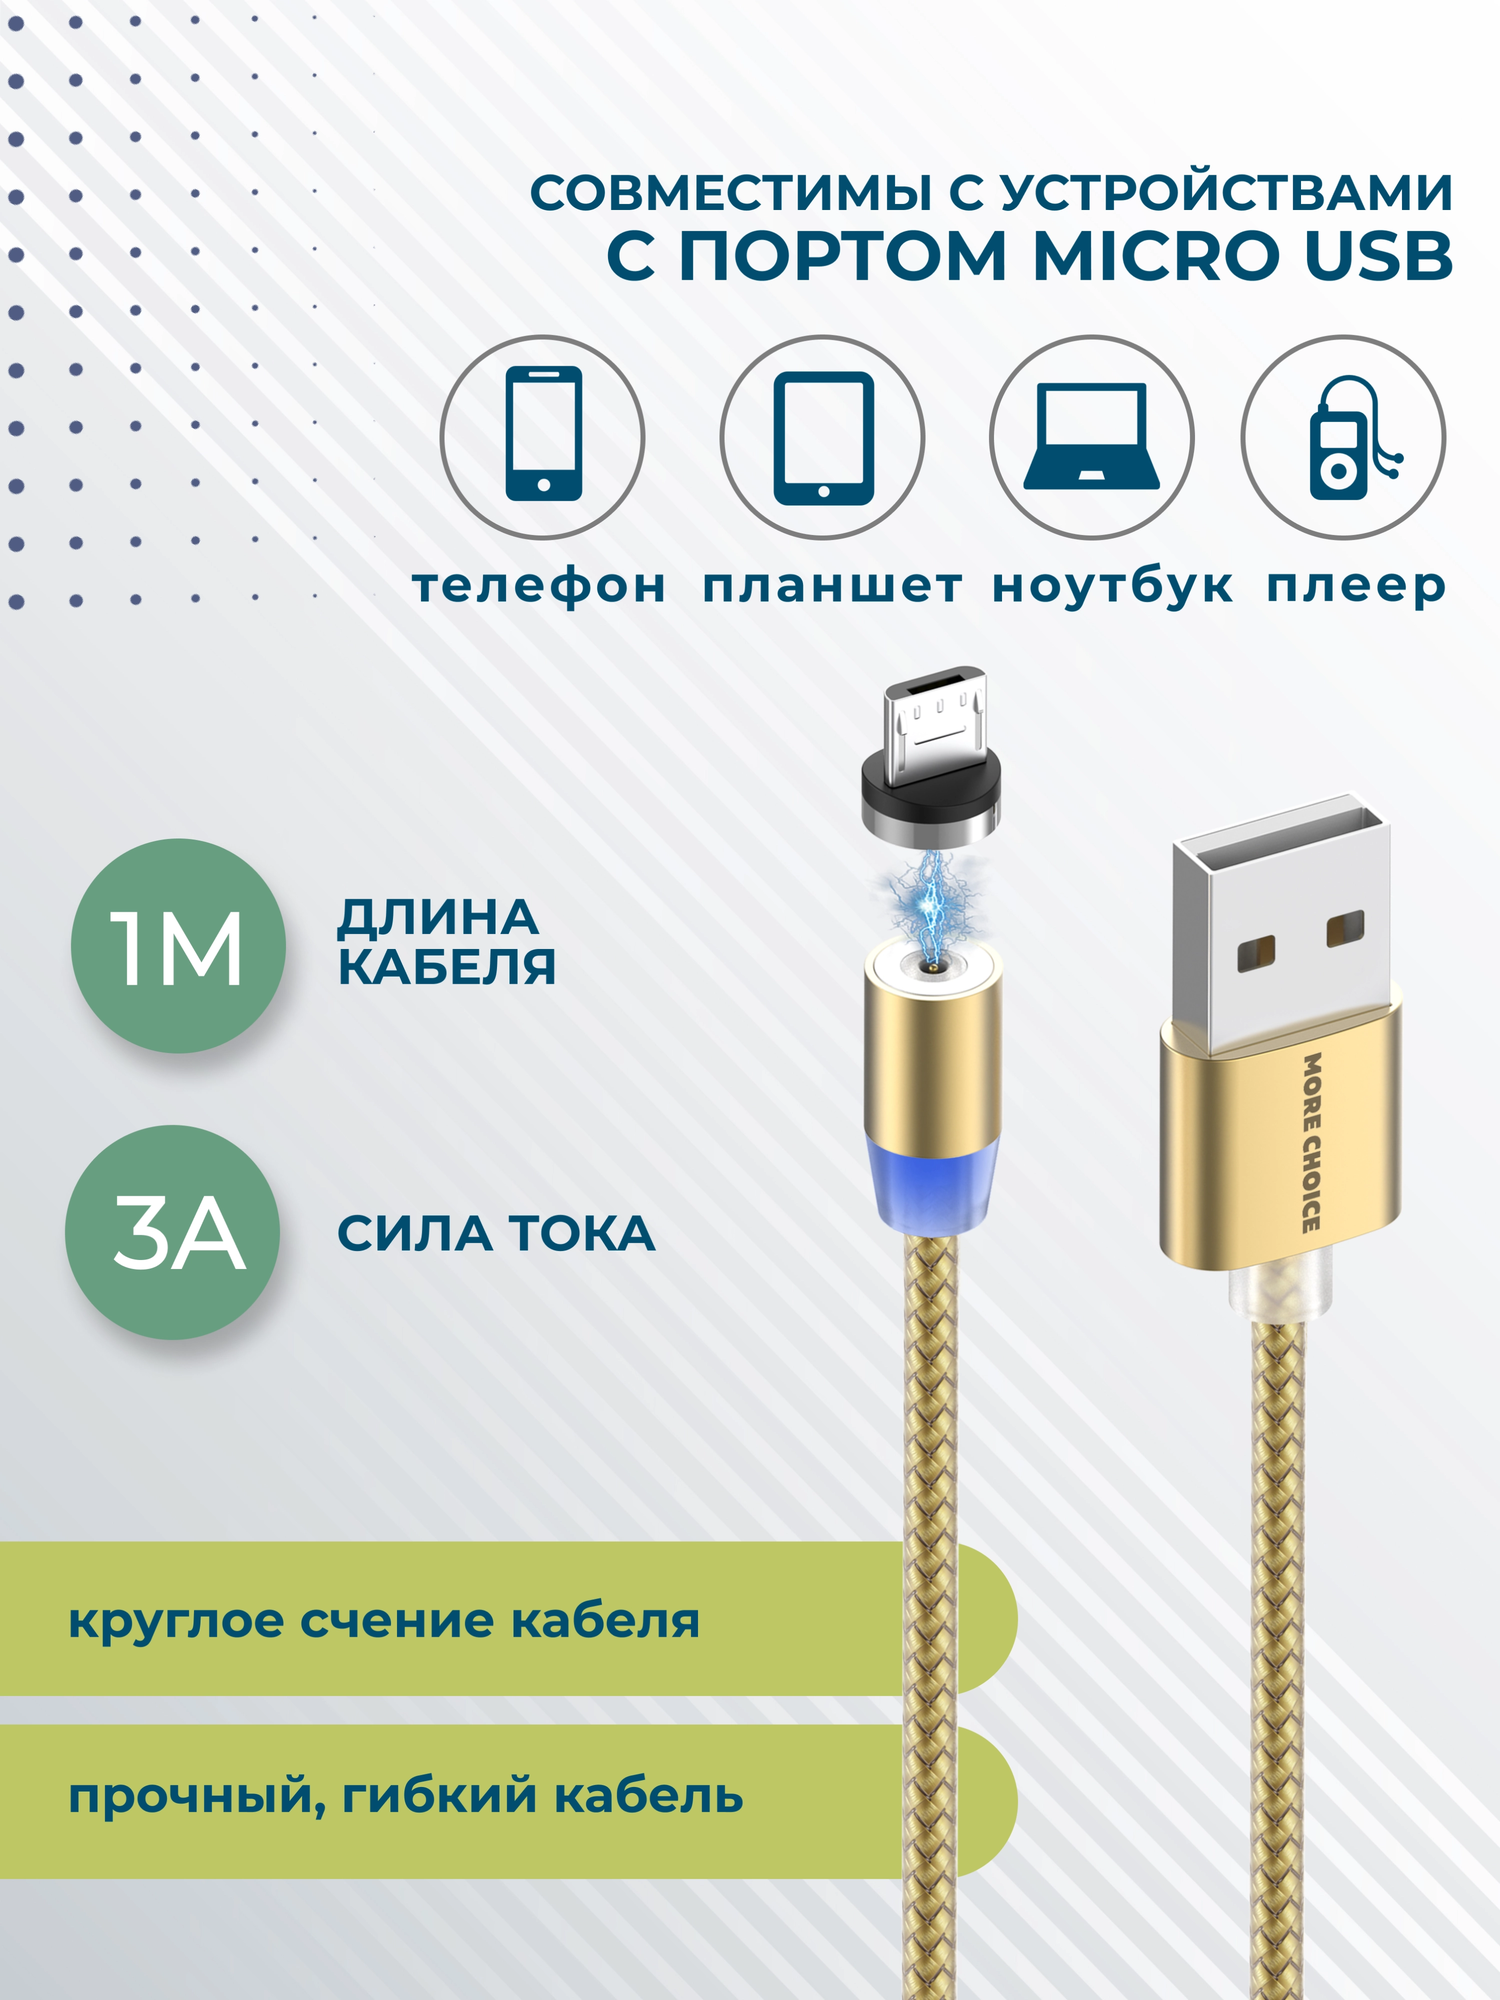 Кабель More choice K61Sm 1м Gold Smart USB 3.0A для micro USB Magnetic золотой - фото №4